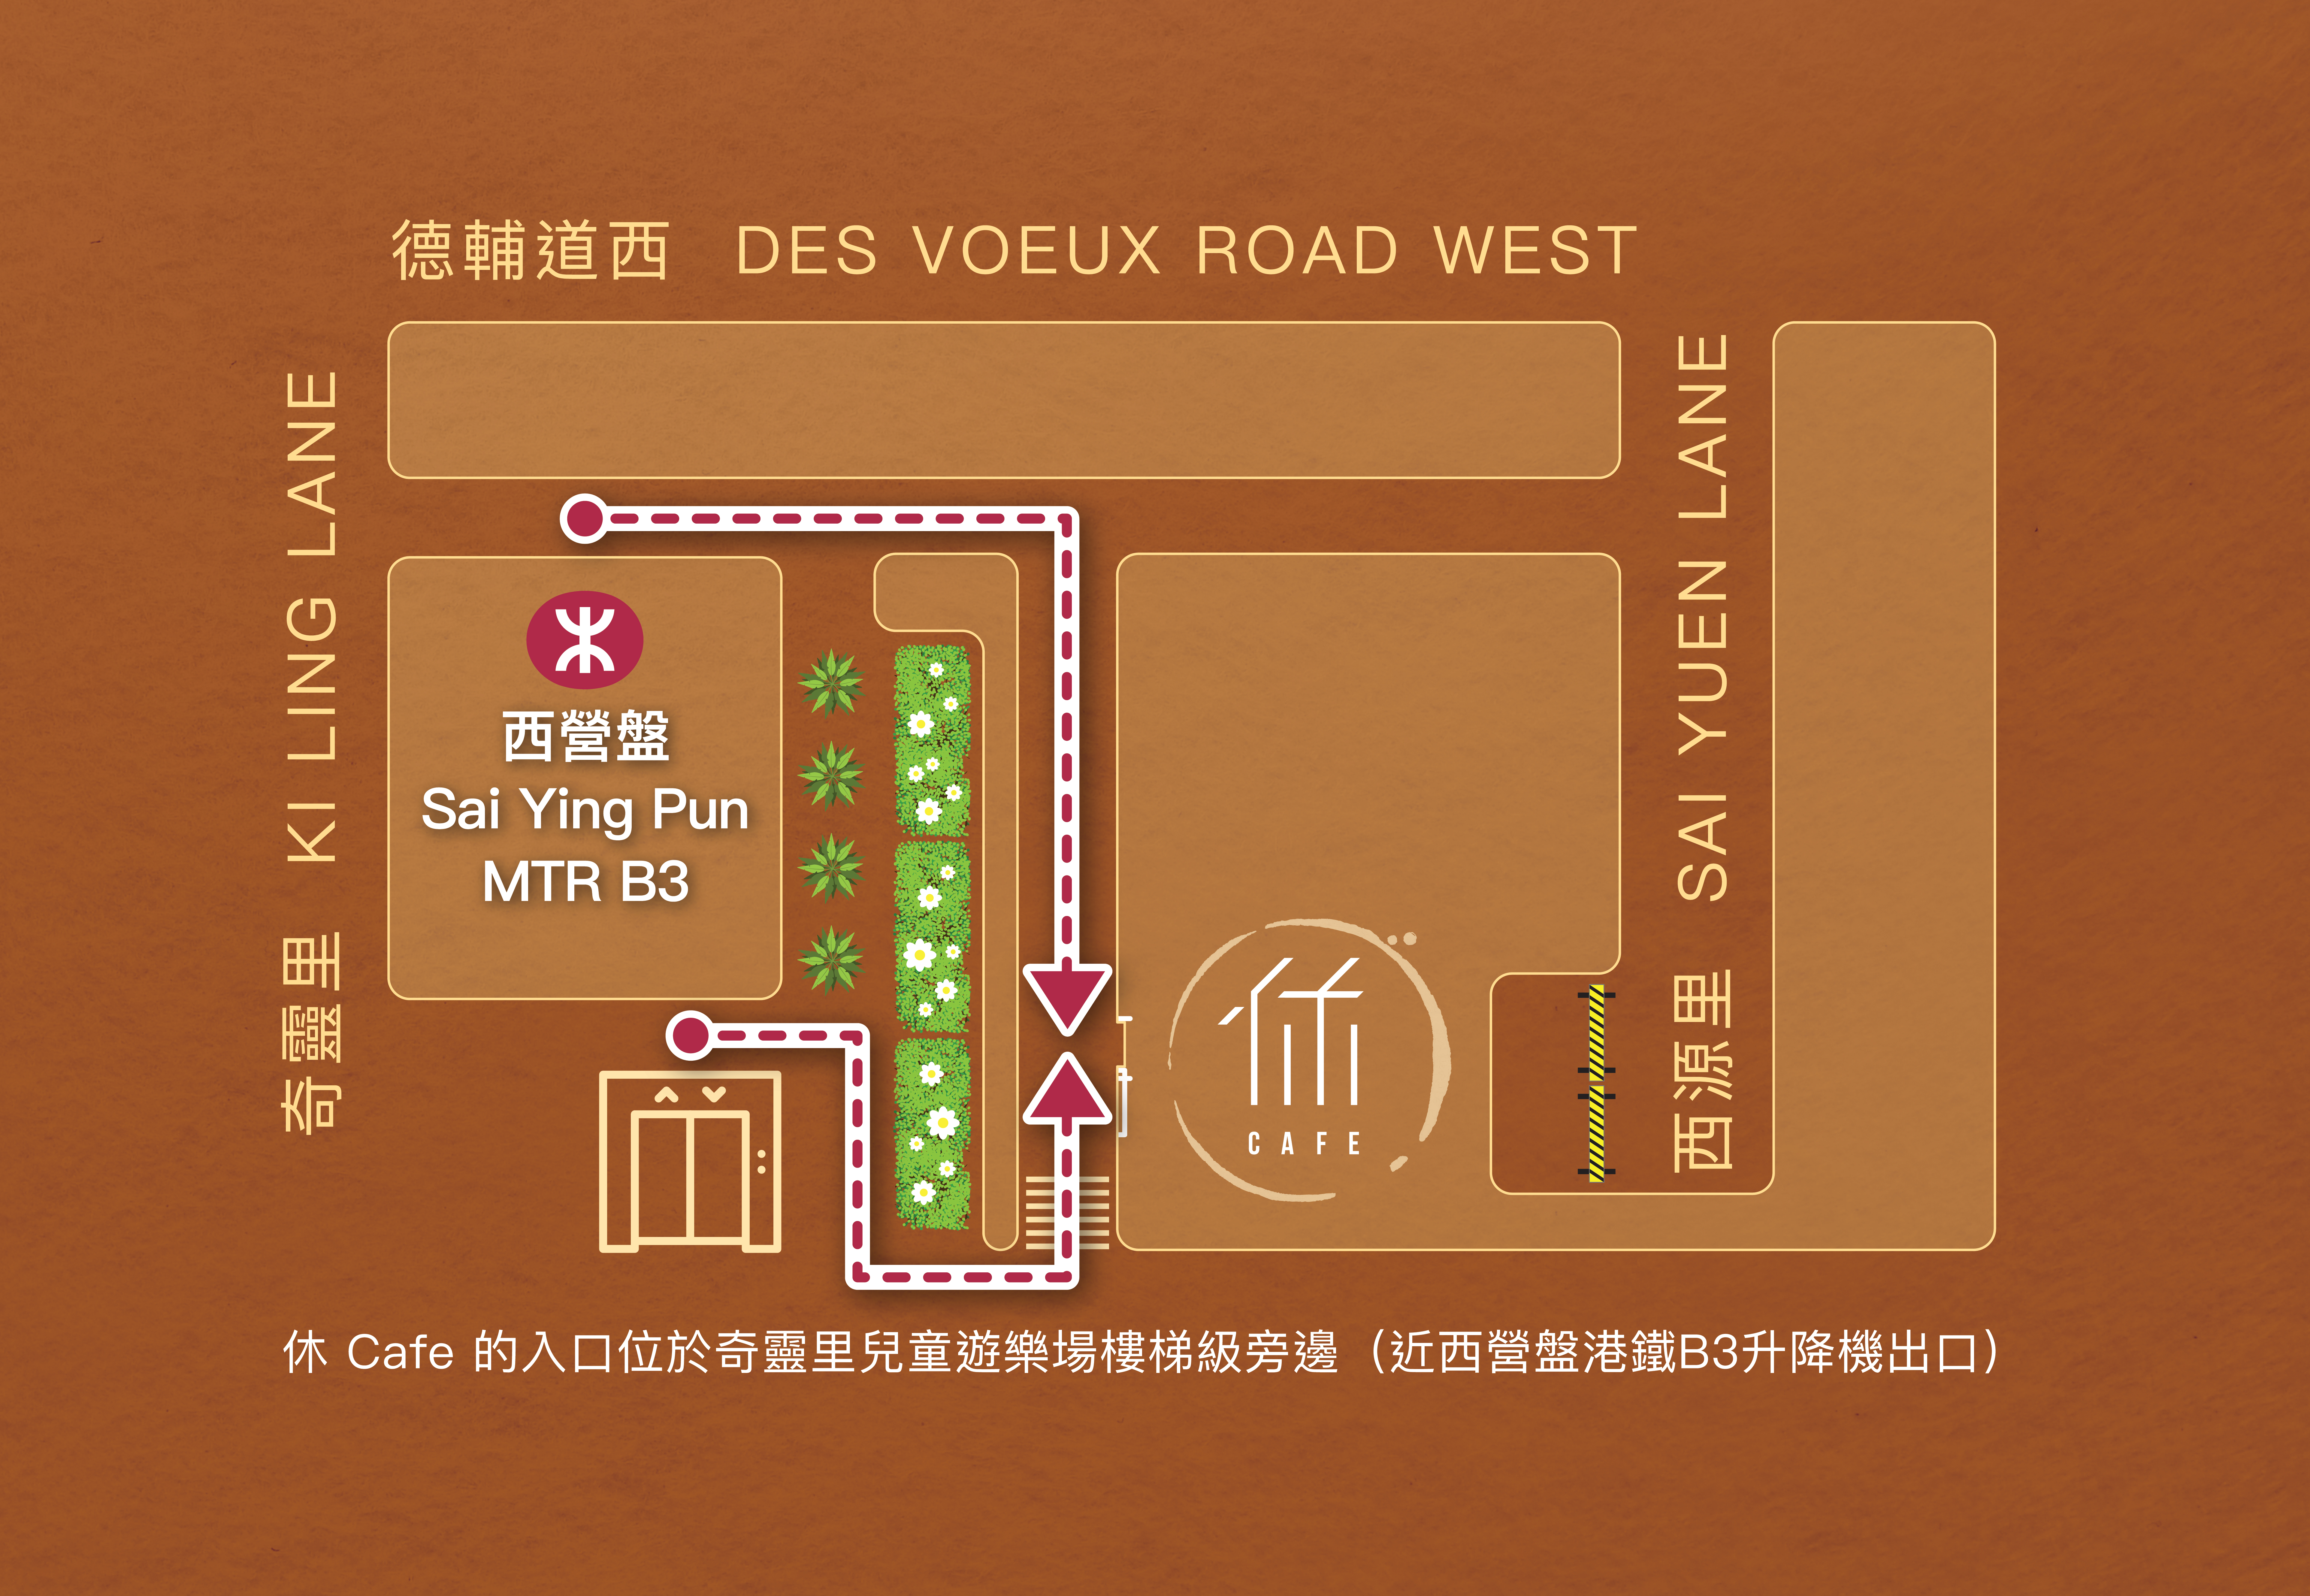 Location of YAU CAFE on map